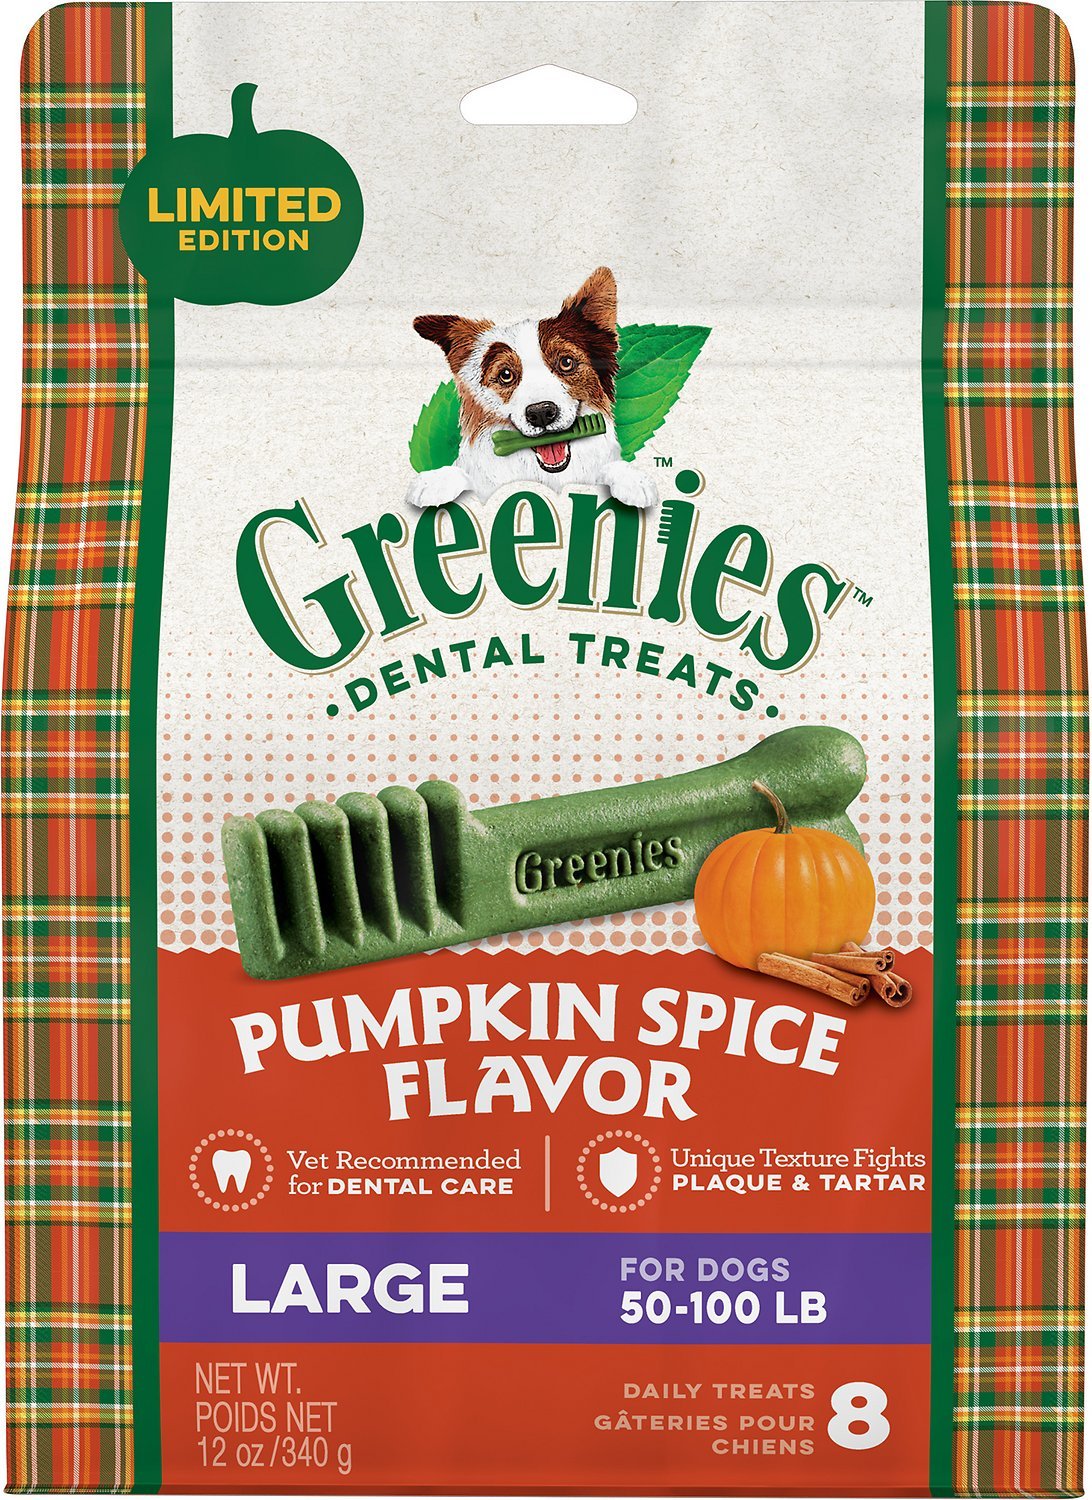 Greenies pumpkin spice dog treats